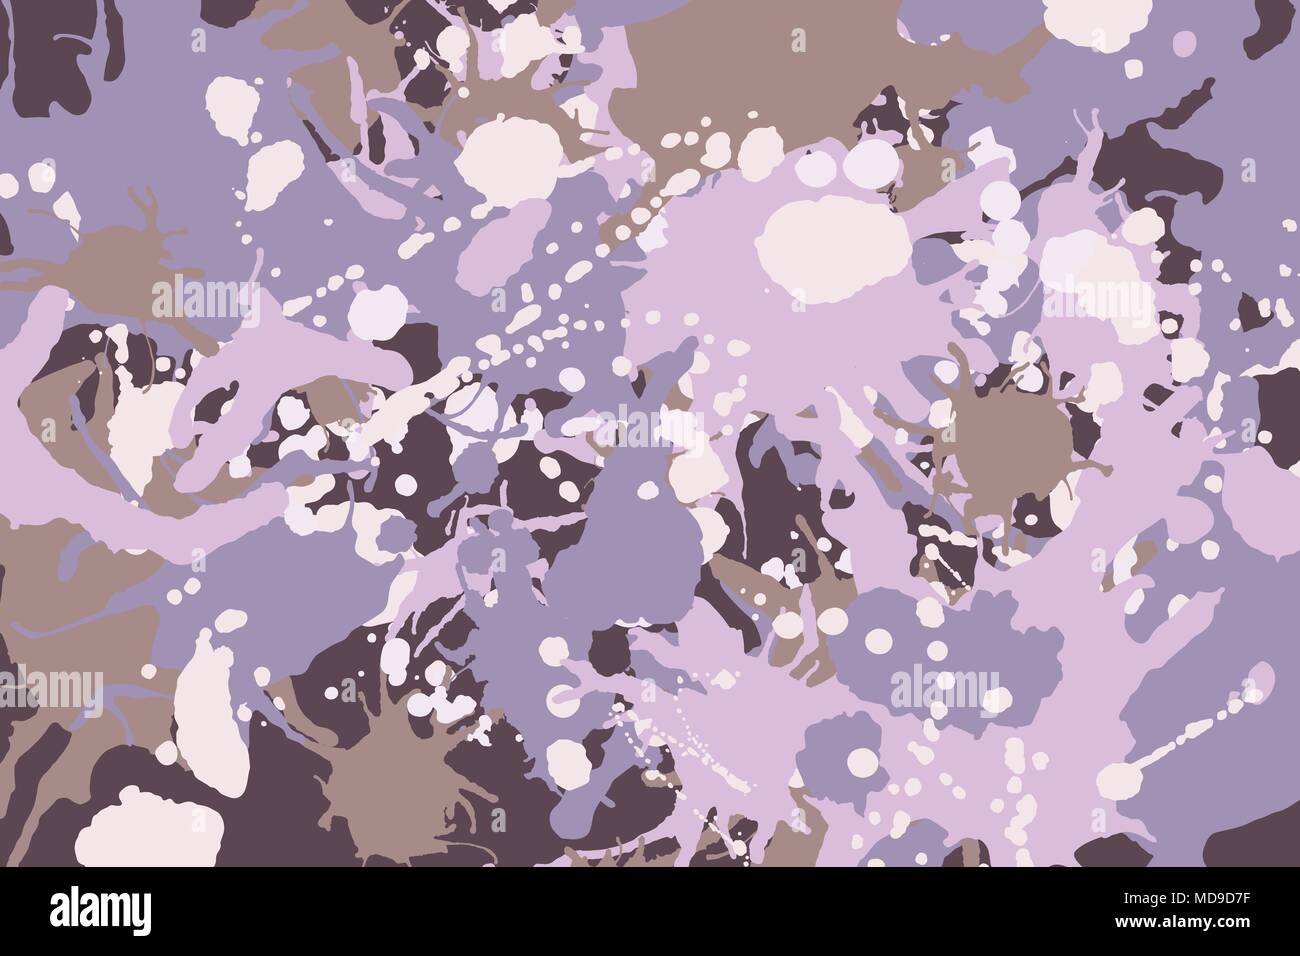 Rosa, Braun, Violett, Weiß, Beige Tinte Farbe spritzt Tarnung Vektor bunten Hintergrund Stock Vektor